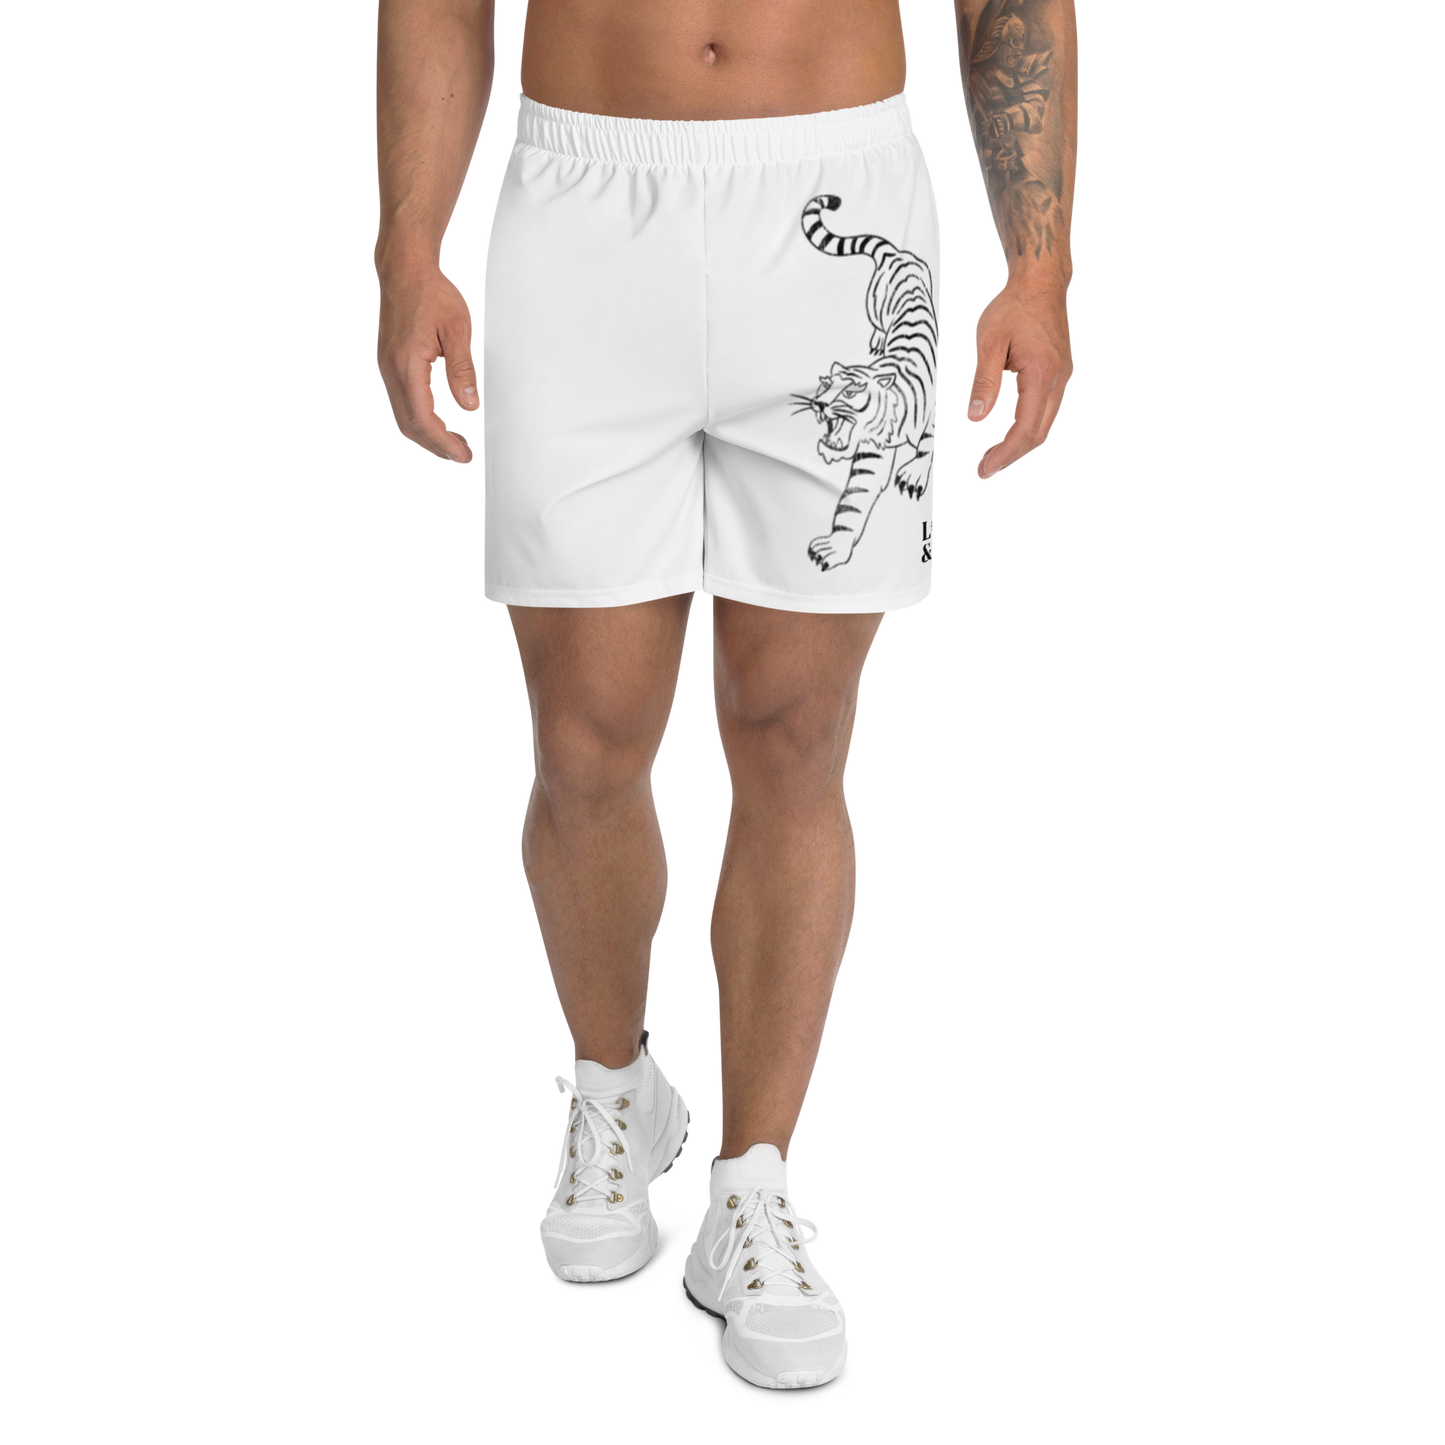 Tiger Athletic Long Shorts